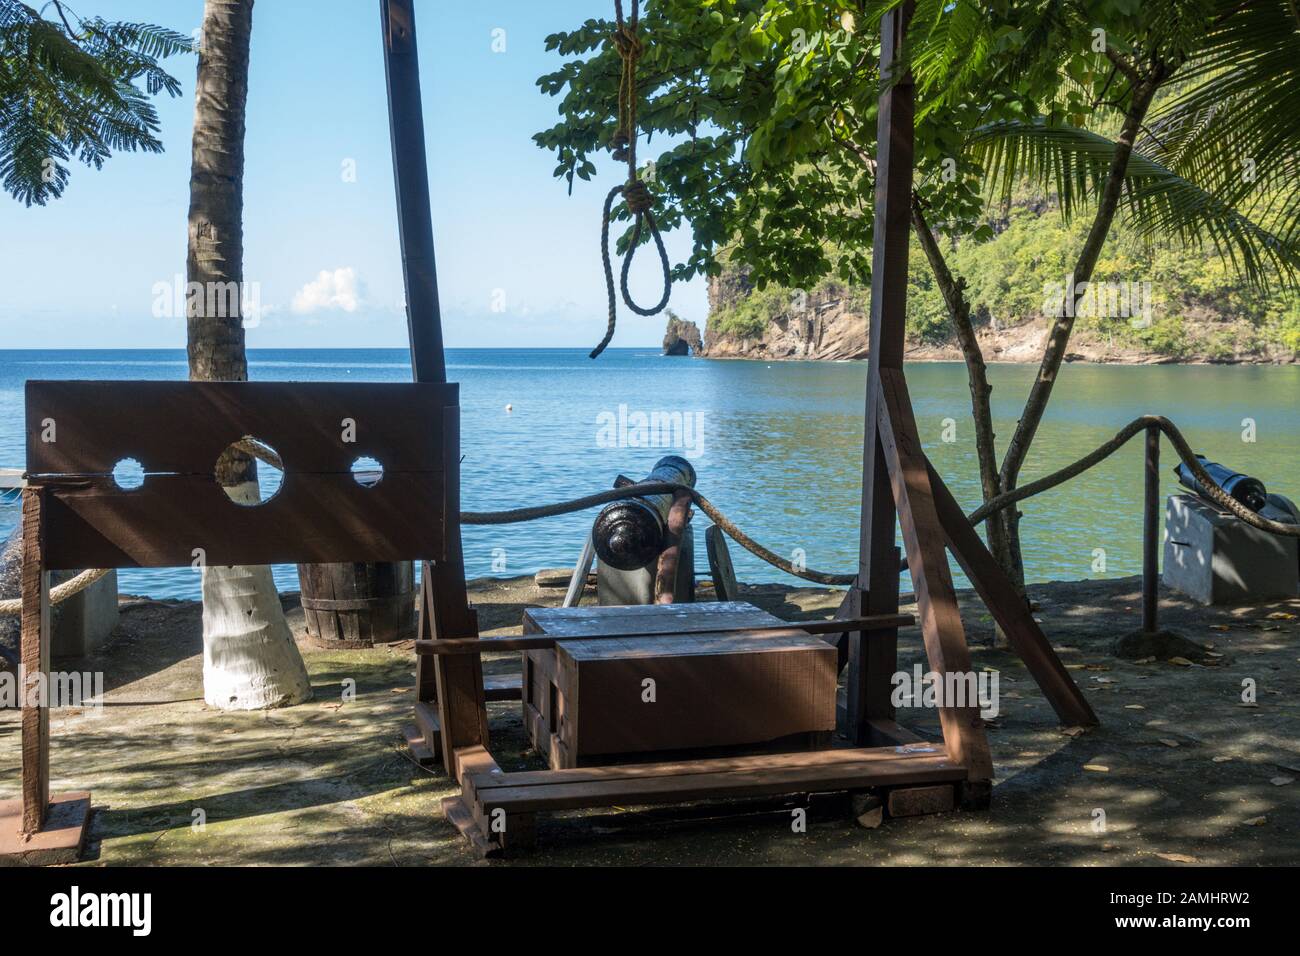 Baie de Wallulabou, ensemble de pirates du film des Caraïbes, Saint-Vincent-et-les Grenadines, îles Windward, Caraïbes, Antilles Banque D'Images